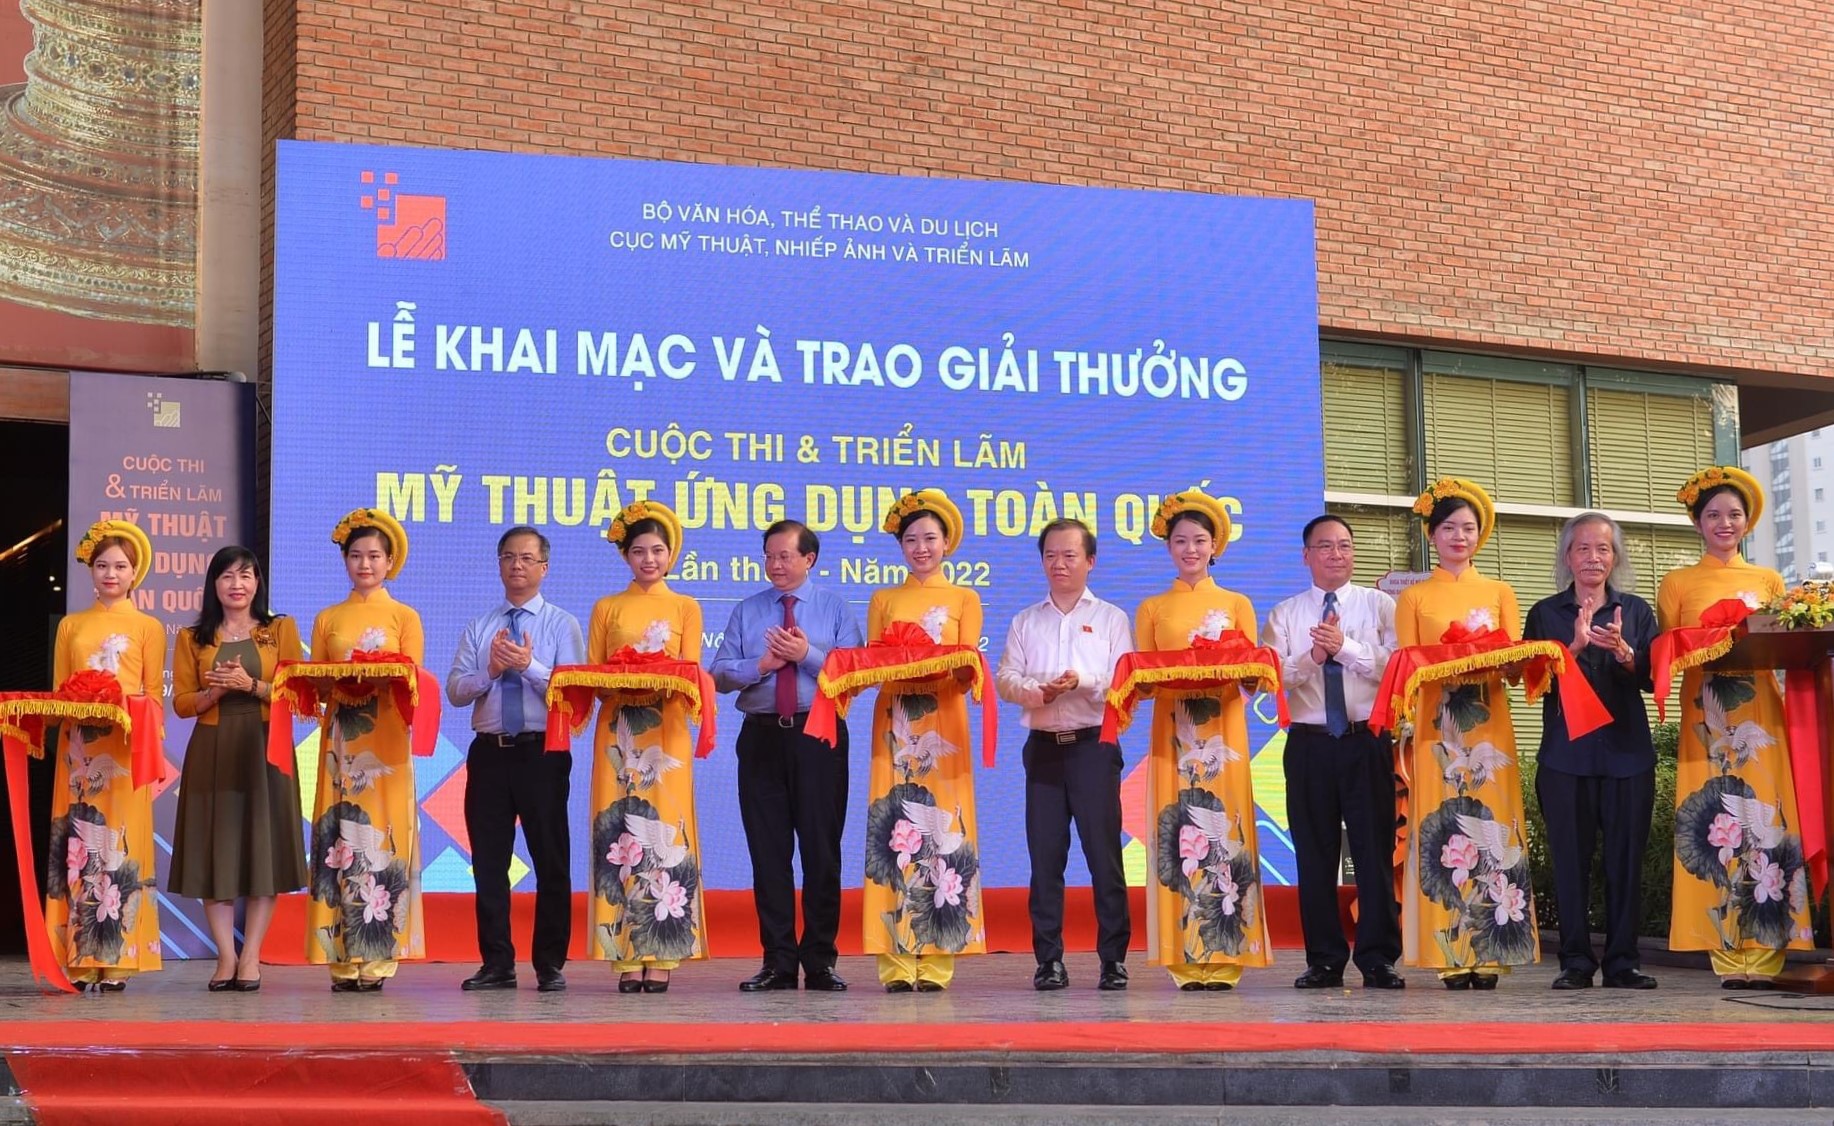 Ngày cuối cùng của Họa sỹ Nguyễn Sáng ở Hà Nội